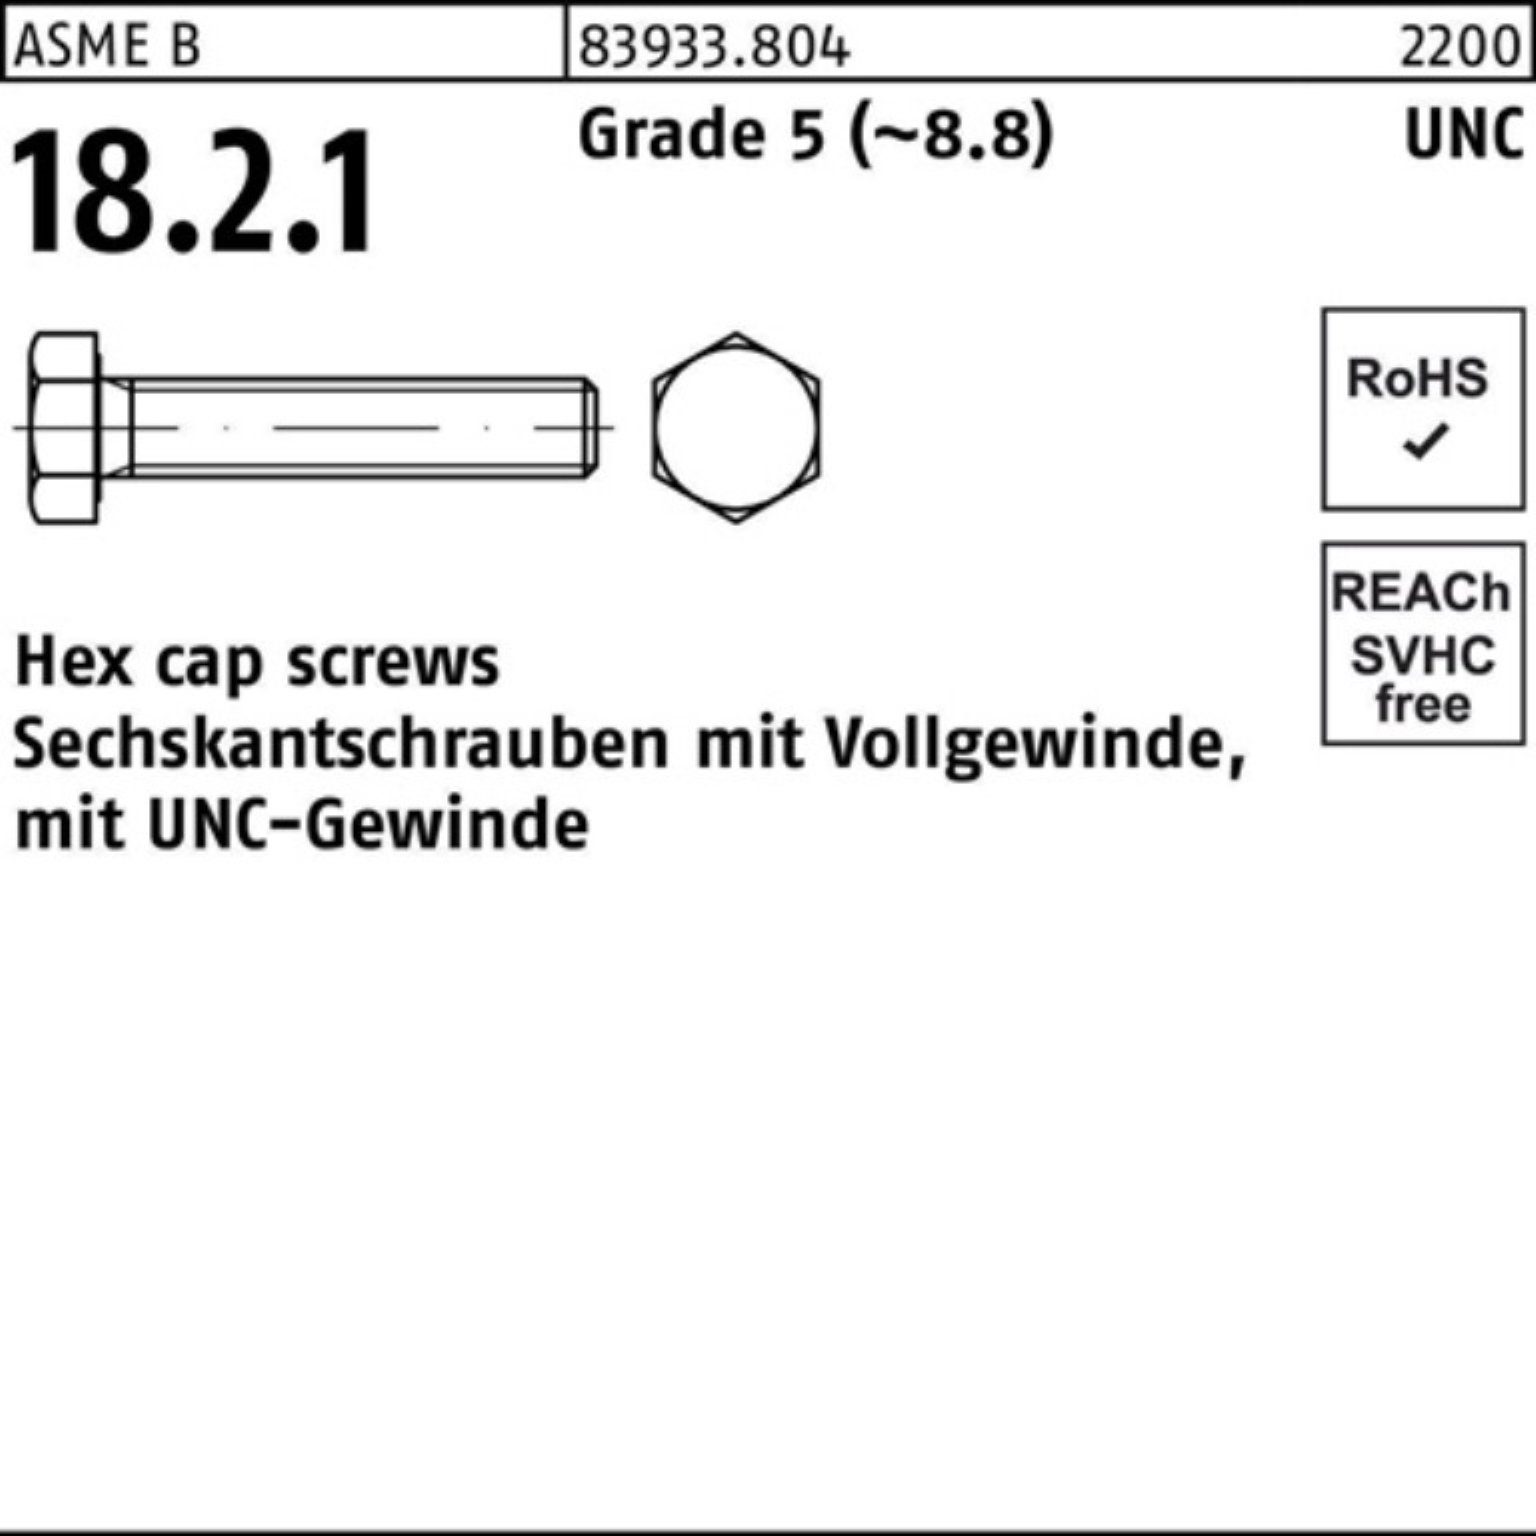 R 100er Sechskantschraube Sechskantschraube Grade Reyher 5/16x 83933 VG 5 Pack 3/4 UNC-Gewinde